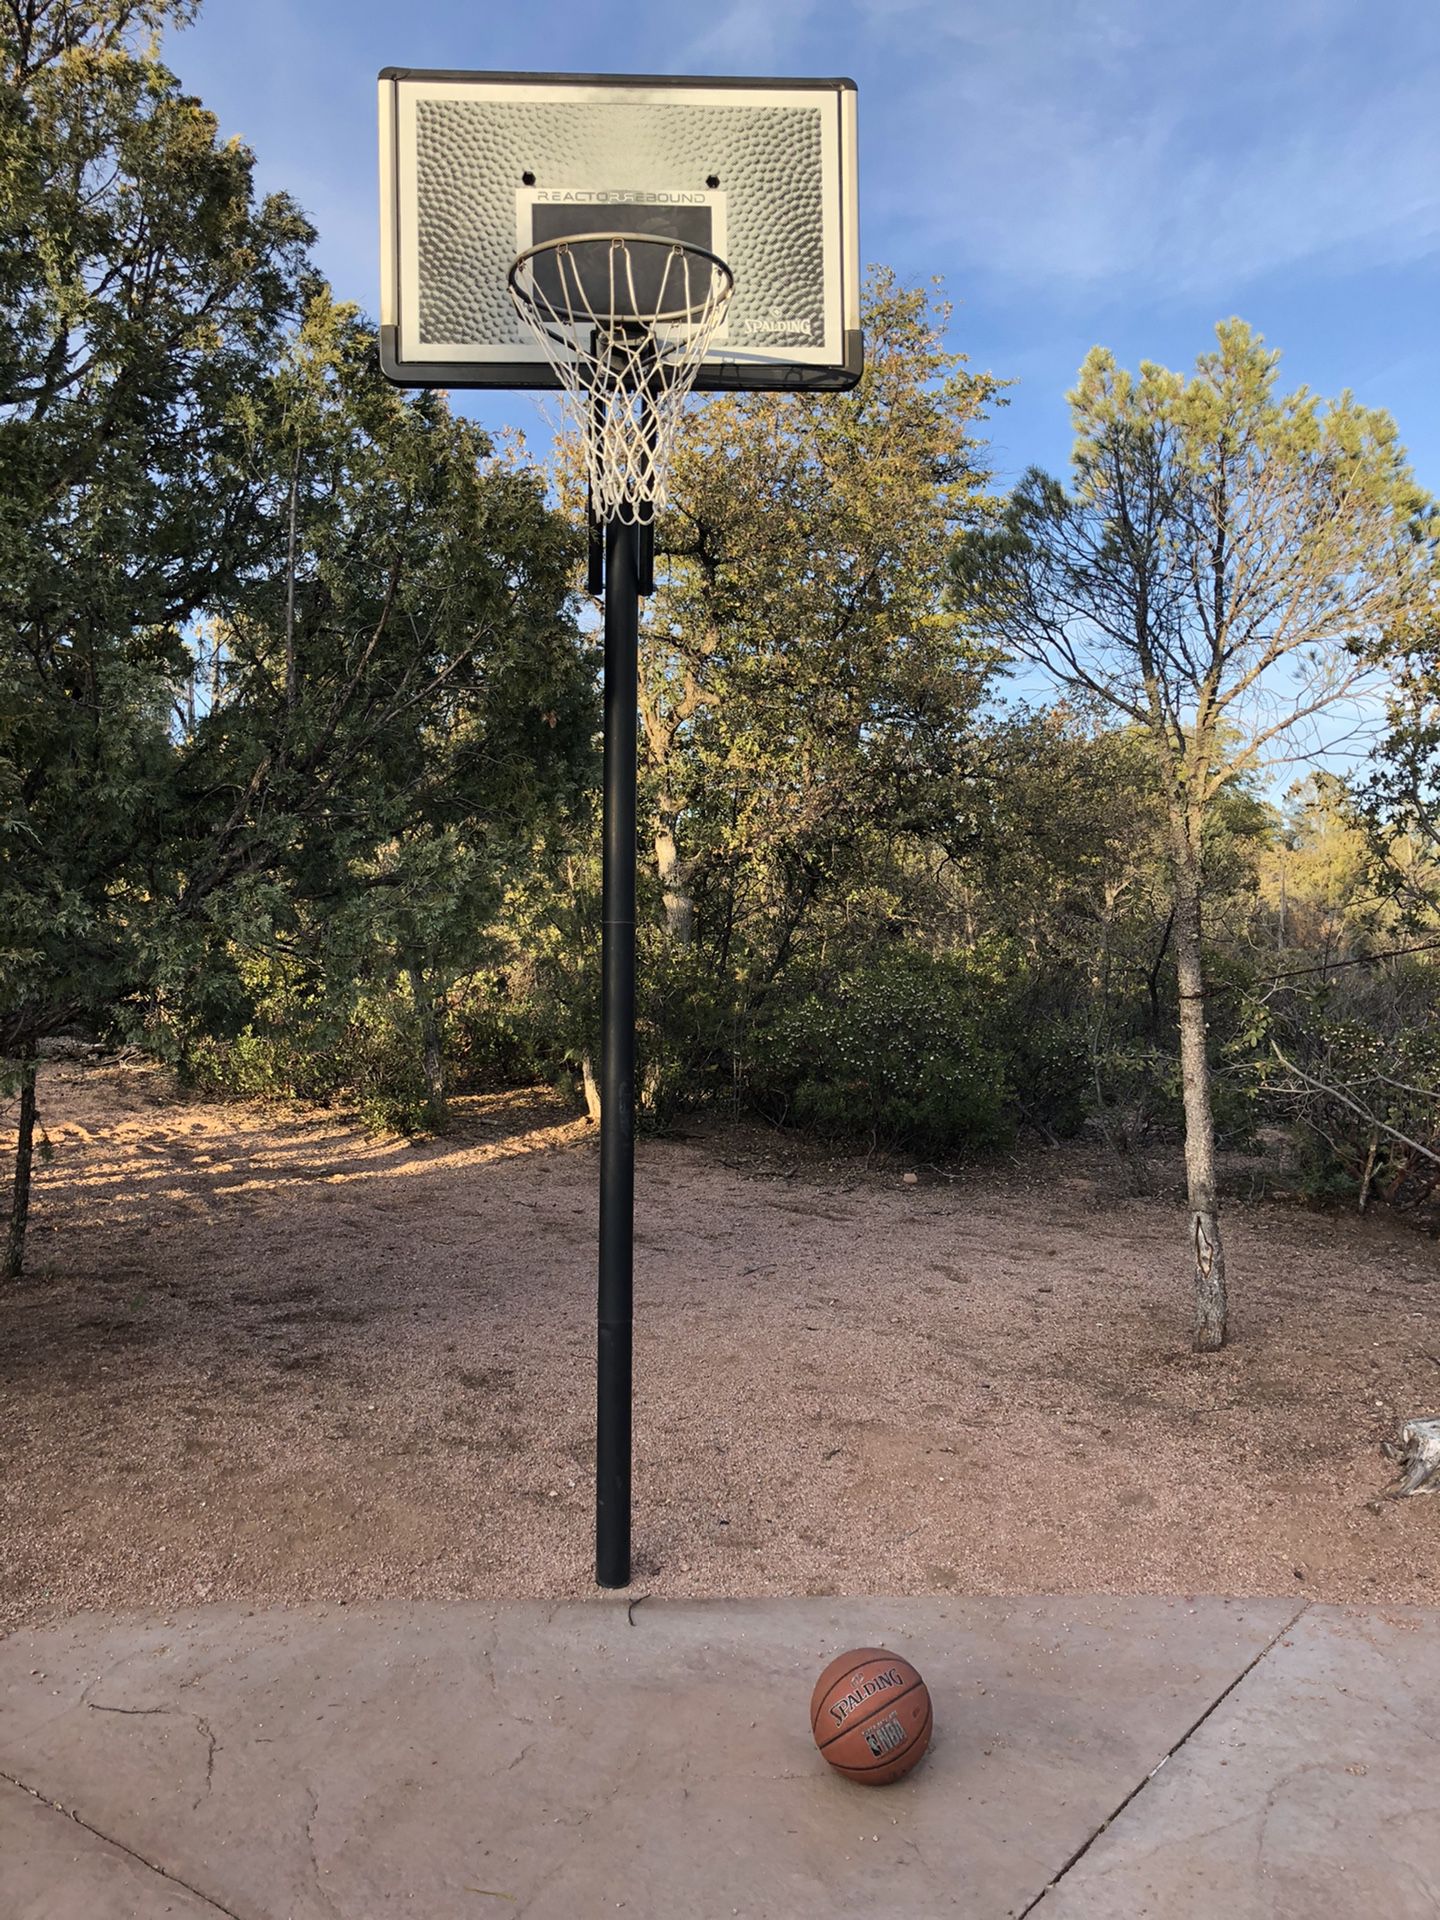 Basketball hoop and basketball